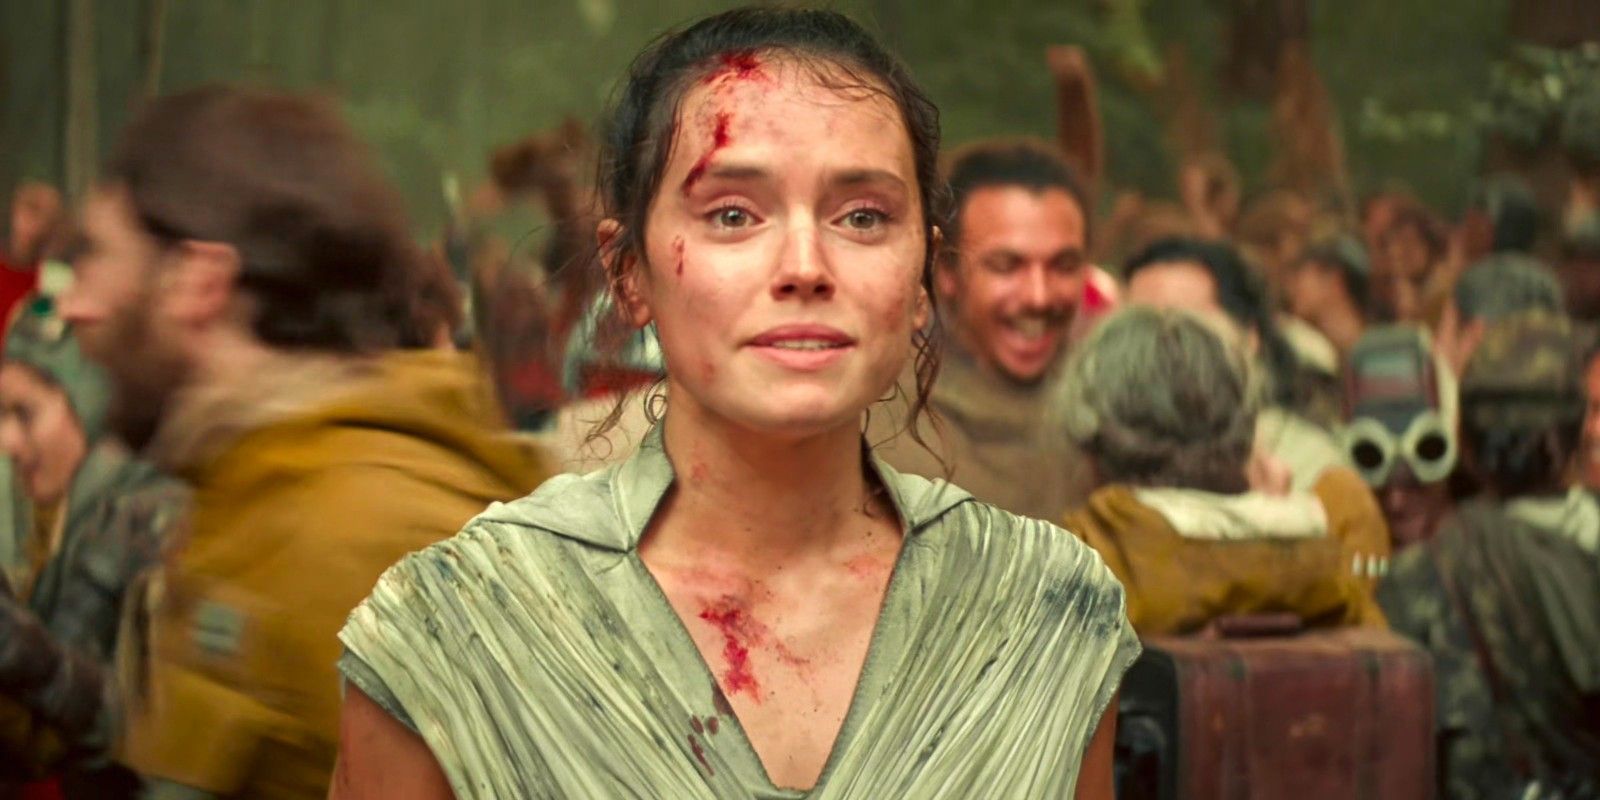 Daisy Ridley as Rey in Star Wars Rise of Skywalker